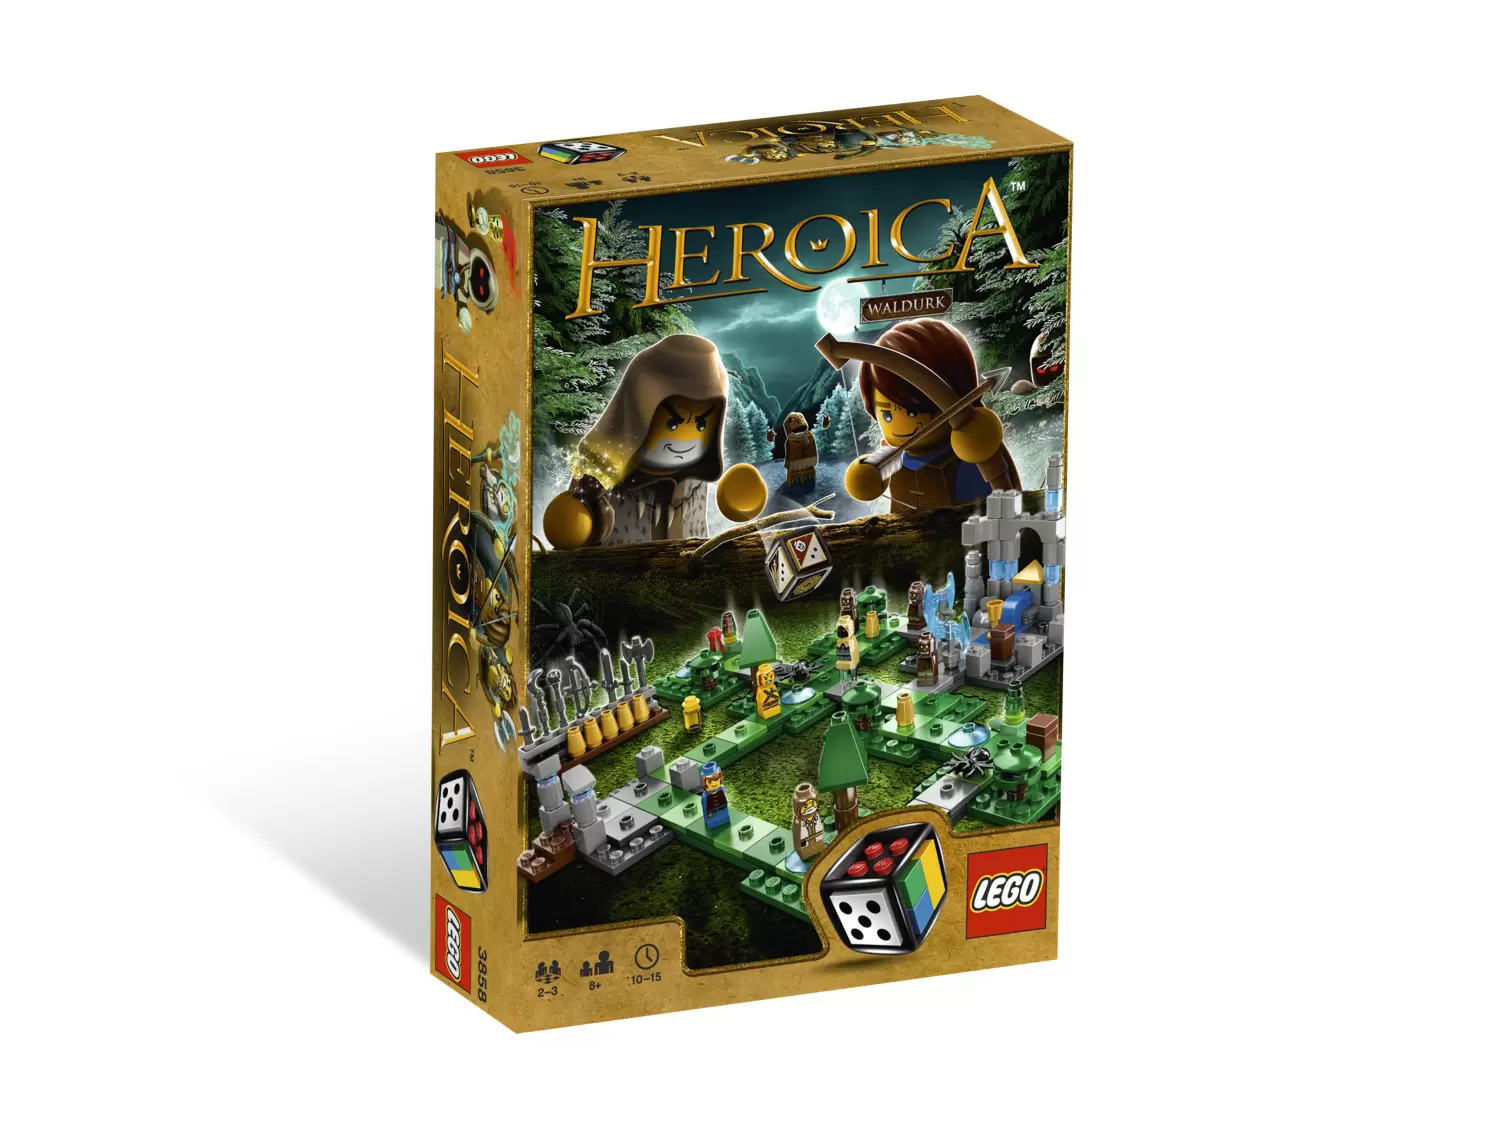 Jeux de société LEGO - Heroica - Waldurk Forest